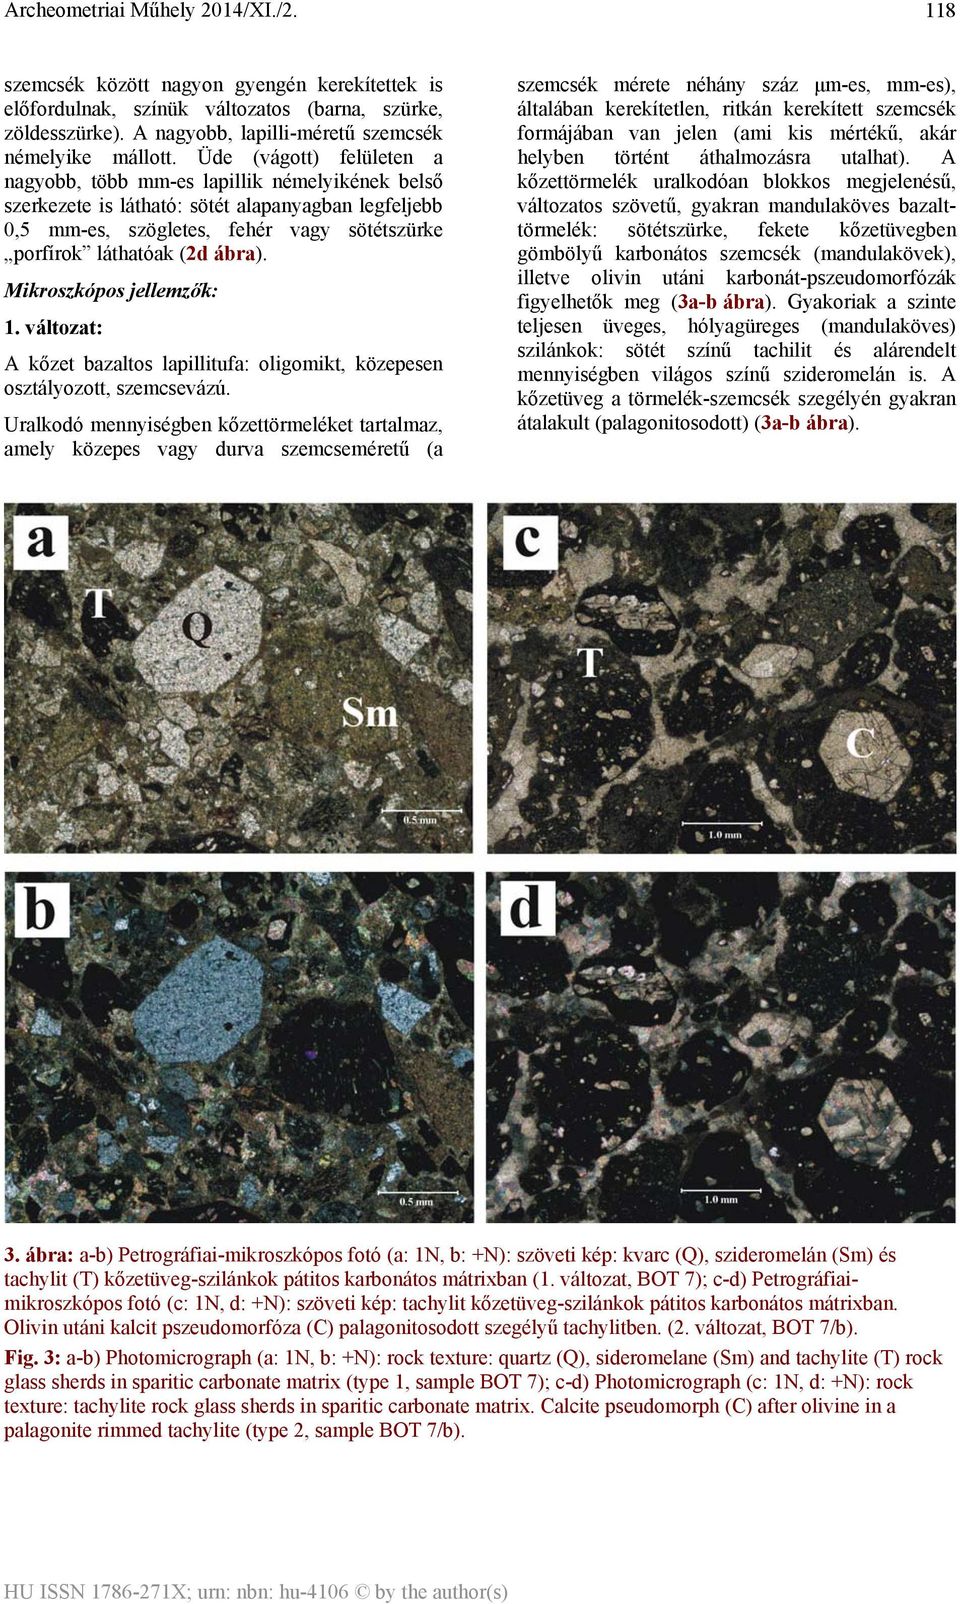 Mikroszkópos jellemzők: 1. változat: A kőzet bazaltos lapillitufa: oligomikt, közepesen osztályozott, szemcsevázú.